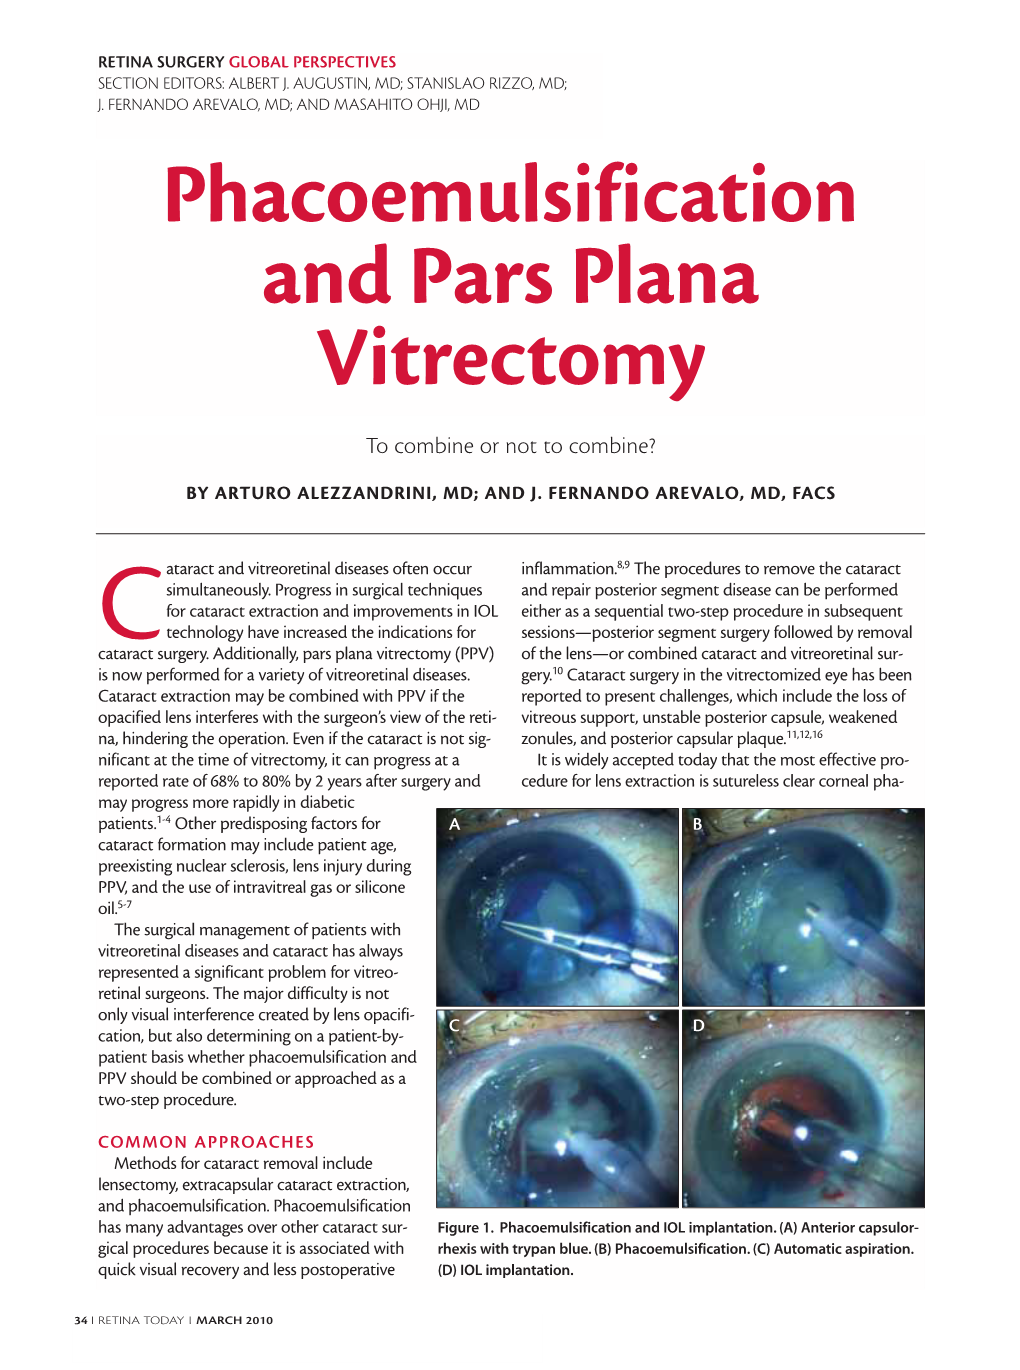 Phacoemulsification and Pars Plana Vitrectomy